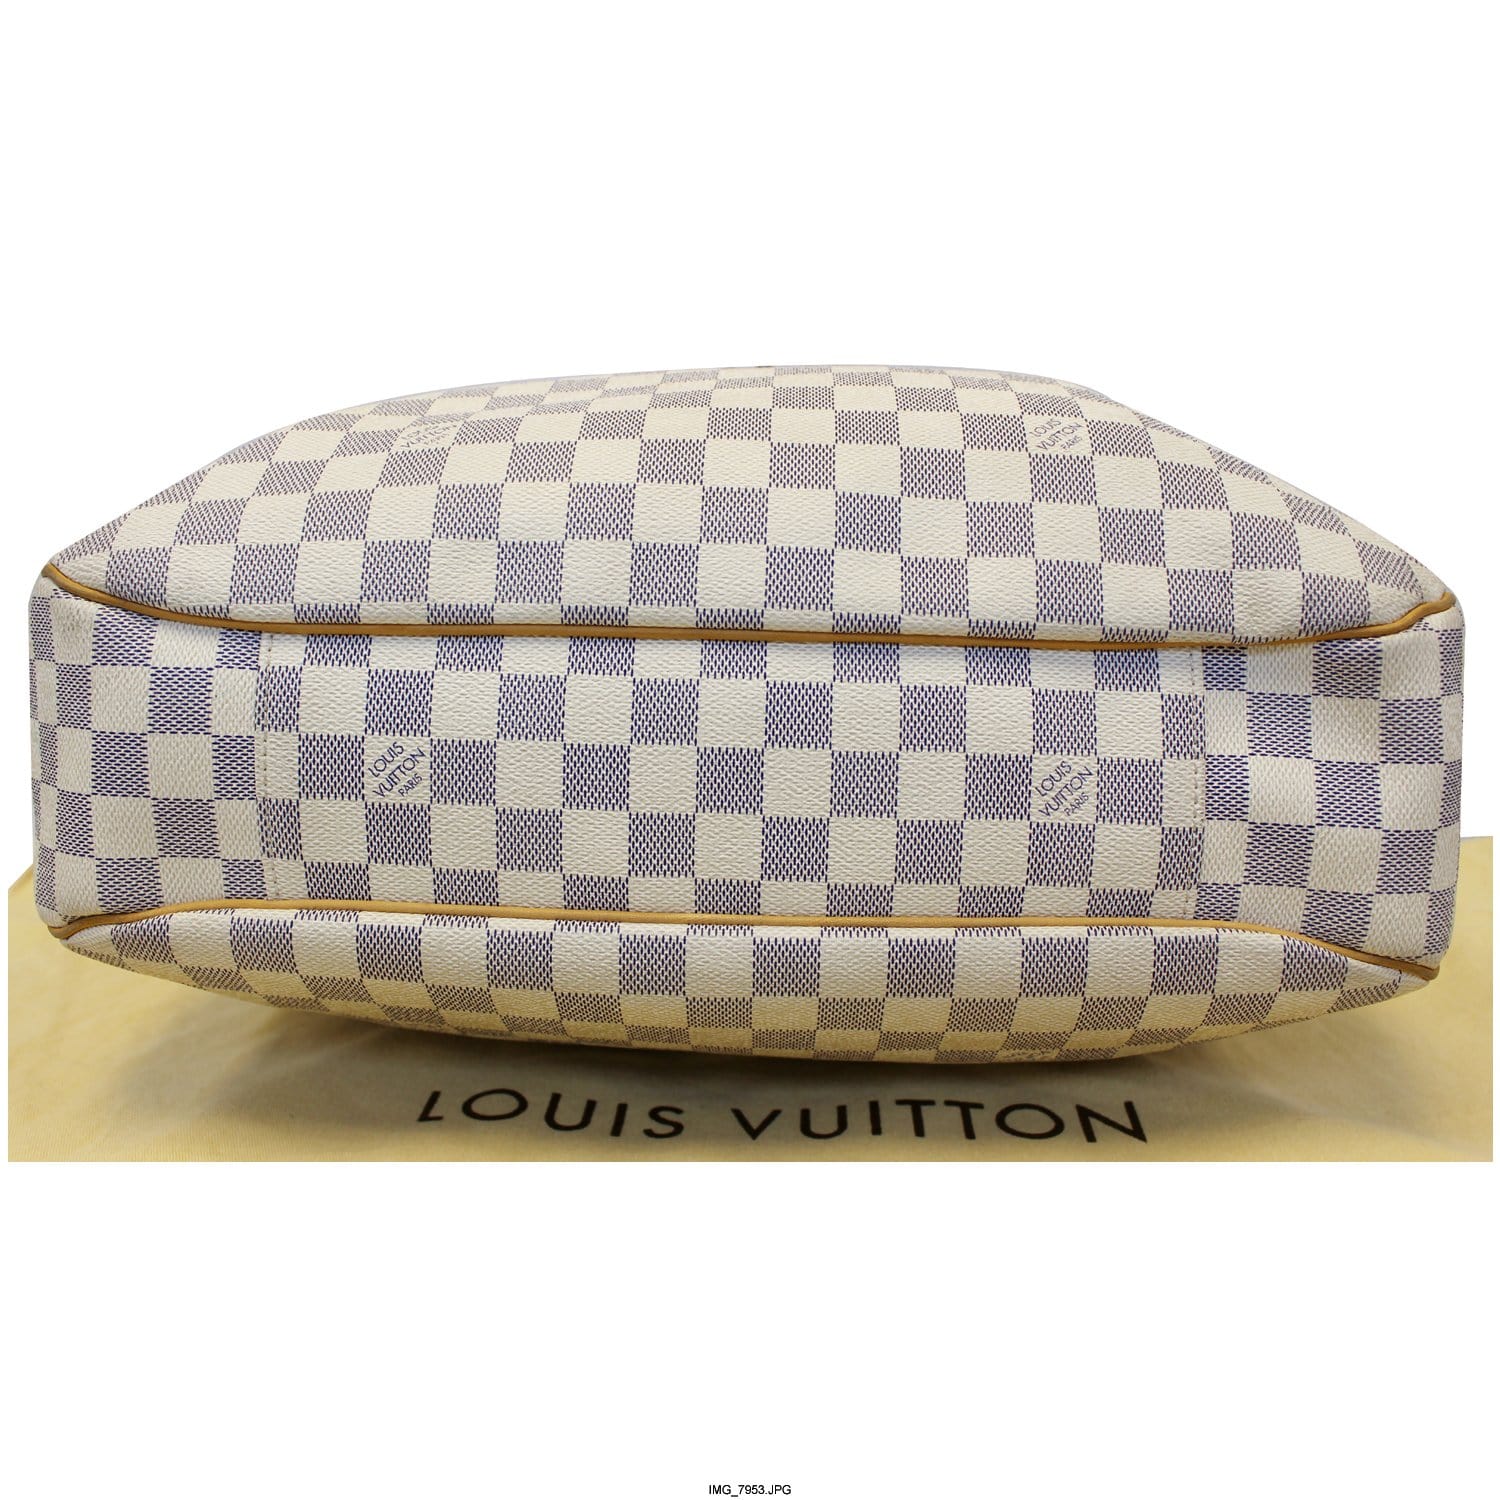 Louis Vuitton Evora MM Damier Ebene Canvas Tote-TheShadesHut